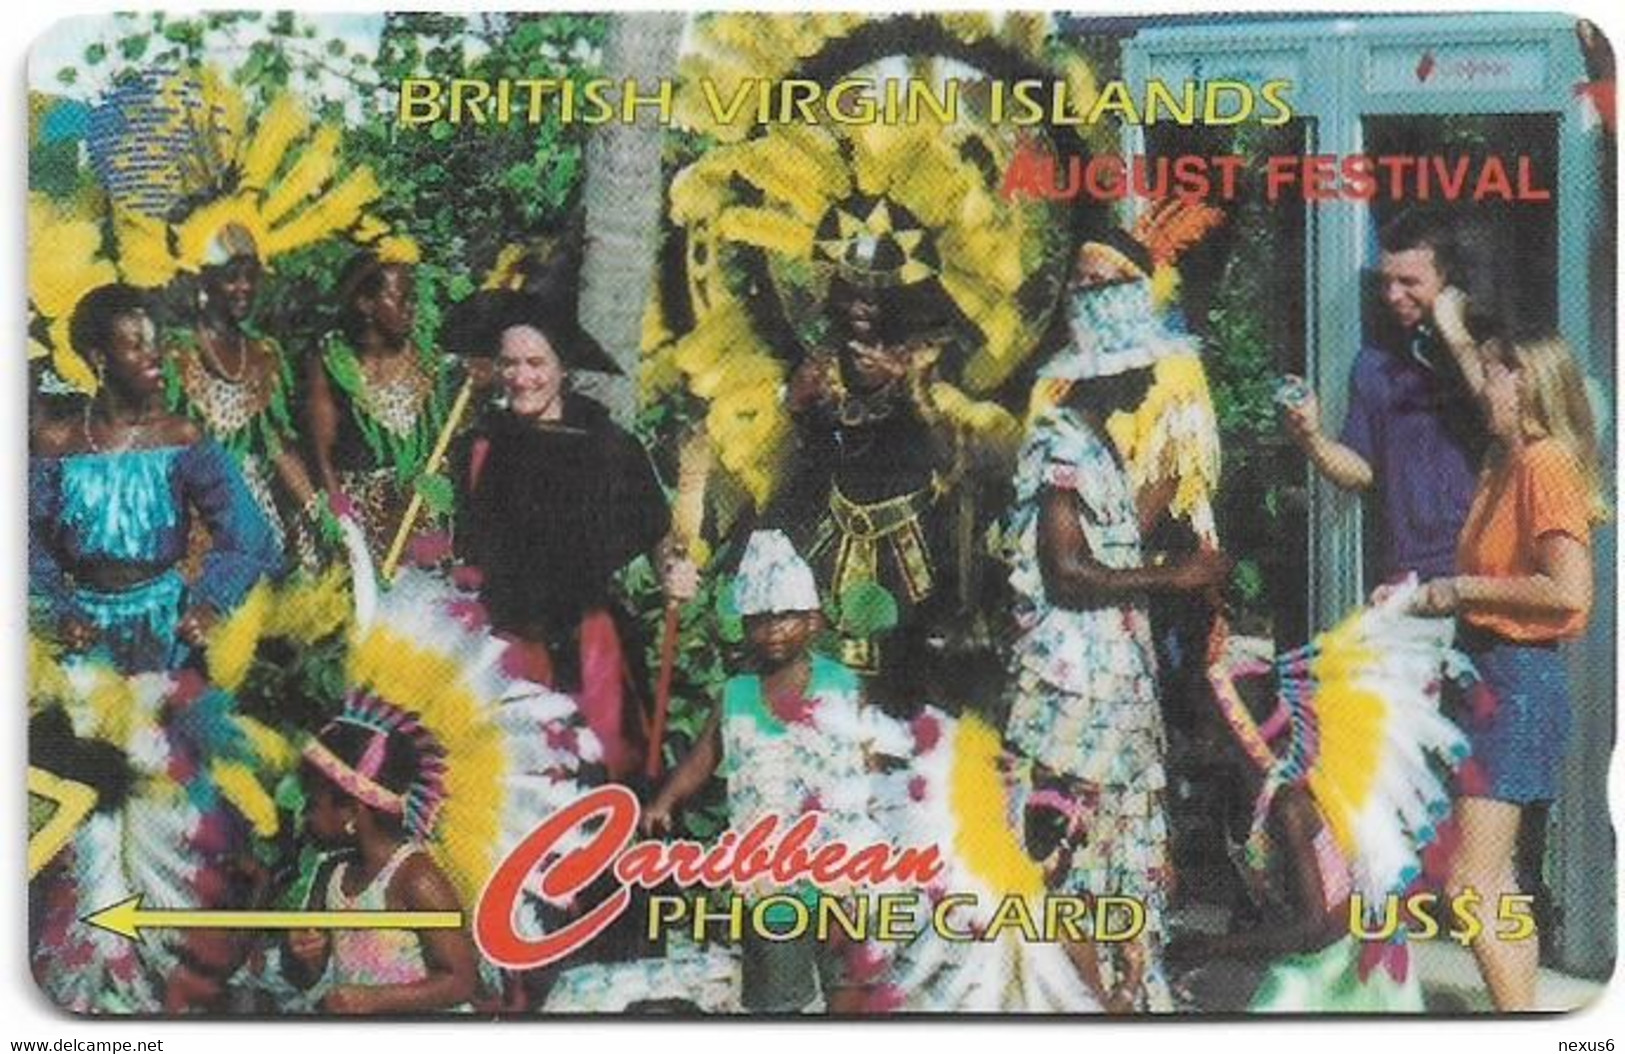 British Virgin Islands - C&W (GPT) - August Festival, 143CBVF, 1997, 17.000ex, Used - Isole Vergini